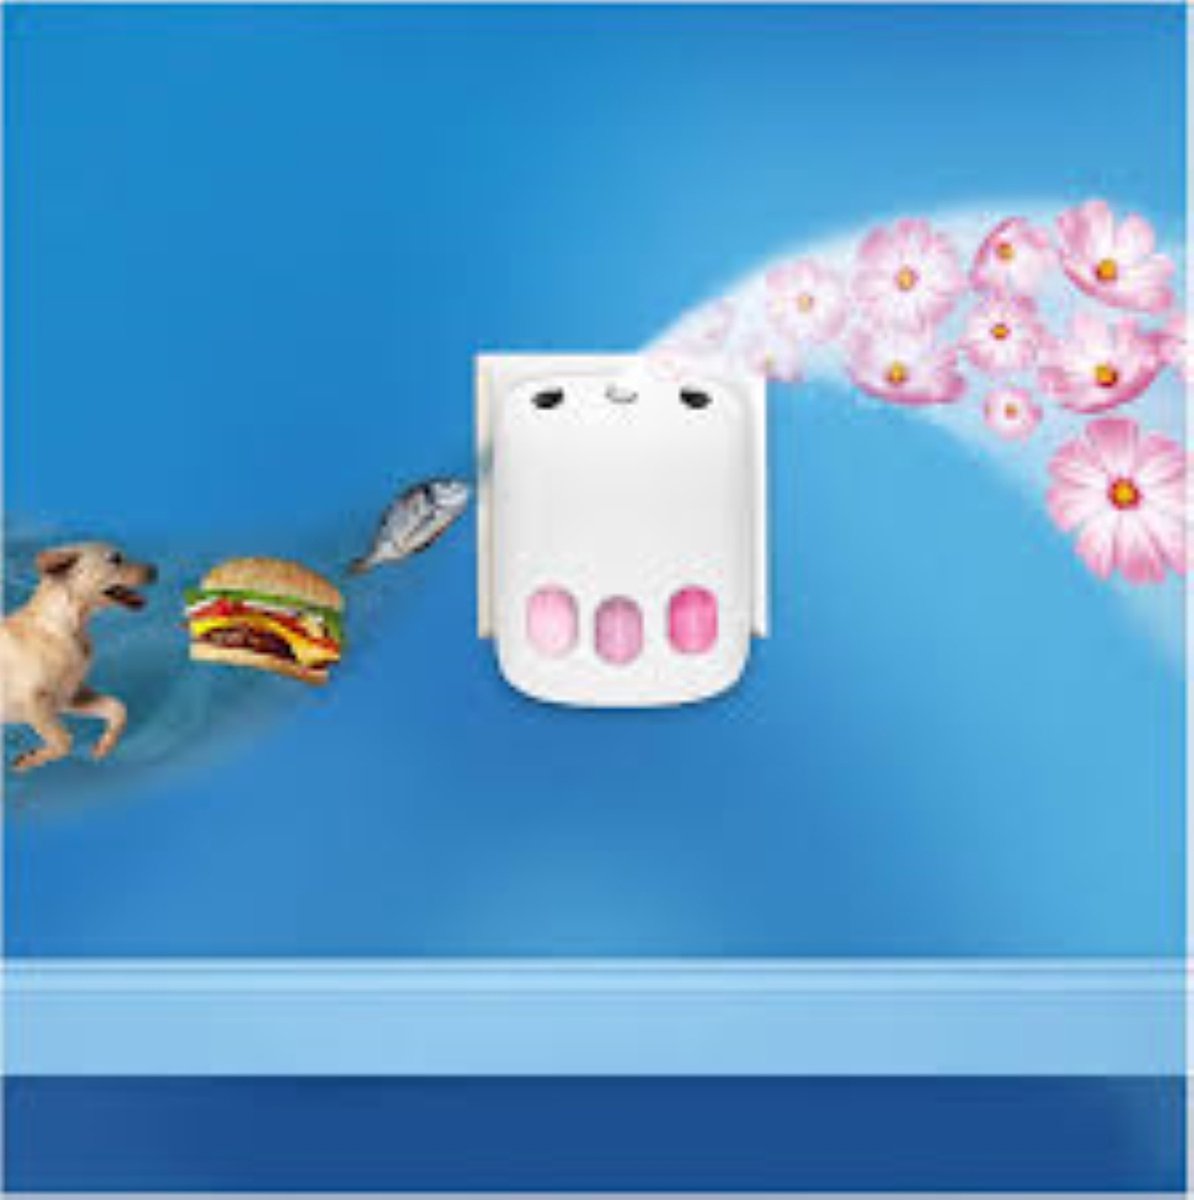 Ambi Pur Electric Refill 3volution - Éliminateur d'odeurs pour animaux de  compagnie 20 ml.